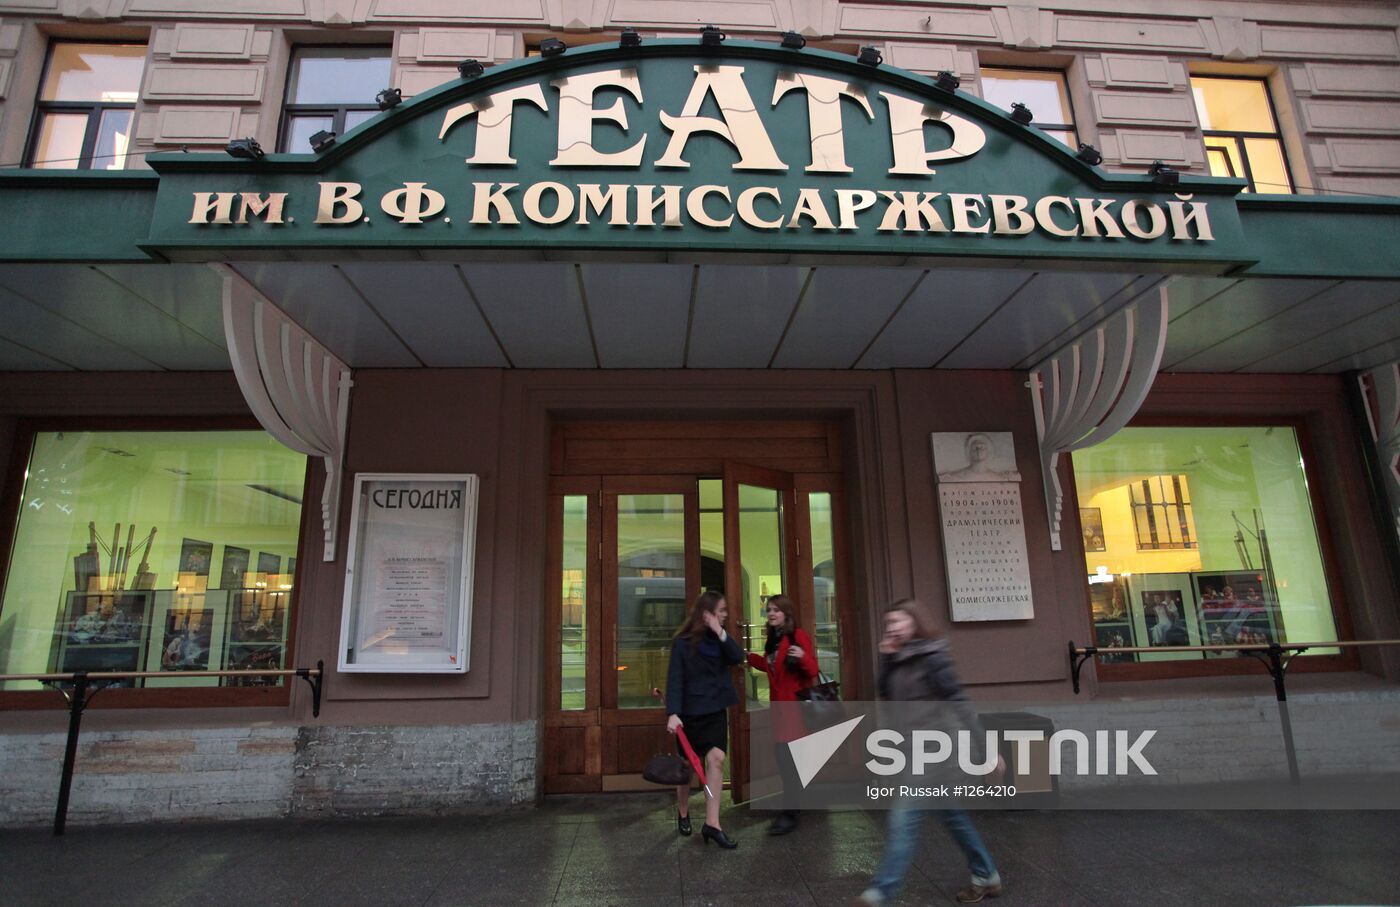 Komissarzhevskaya Theater